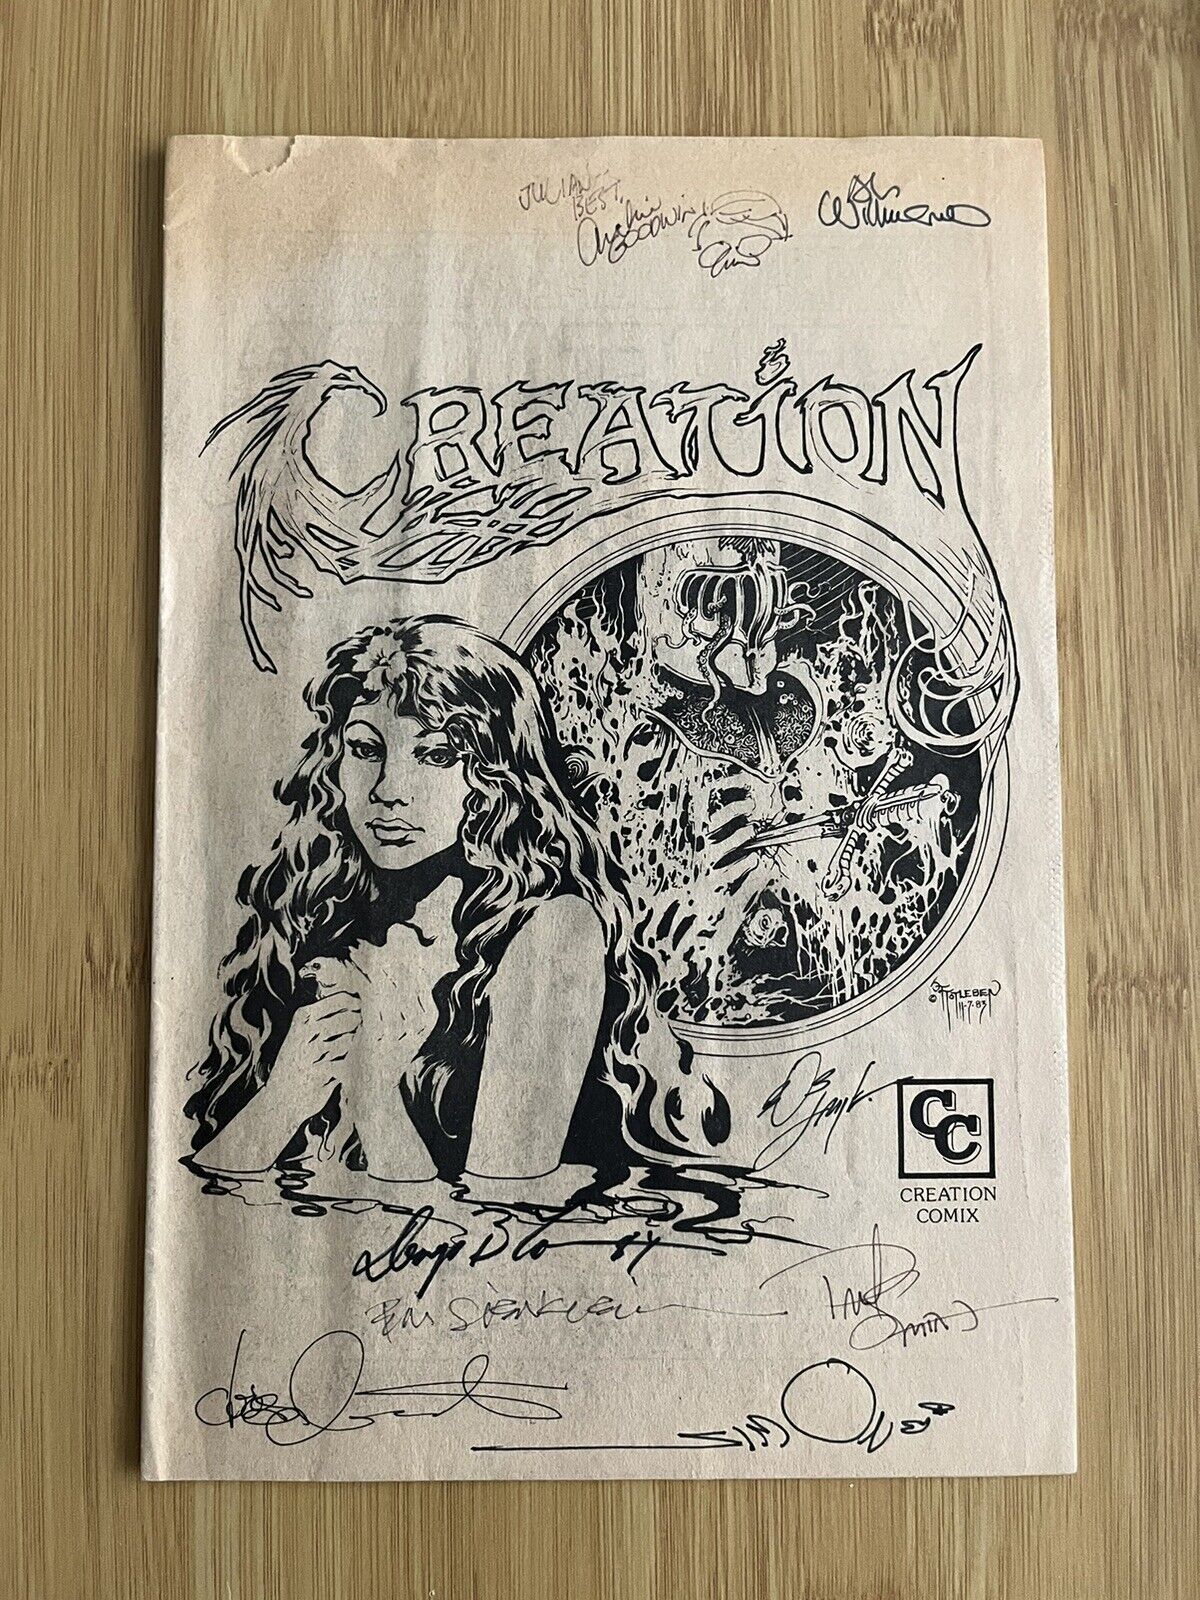 Creation Comix 1984 Program - Signed 8x by Claremont, Simonson, Sienkiewicz, etc